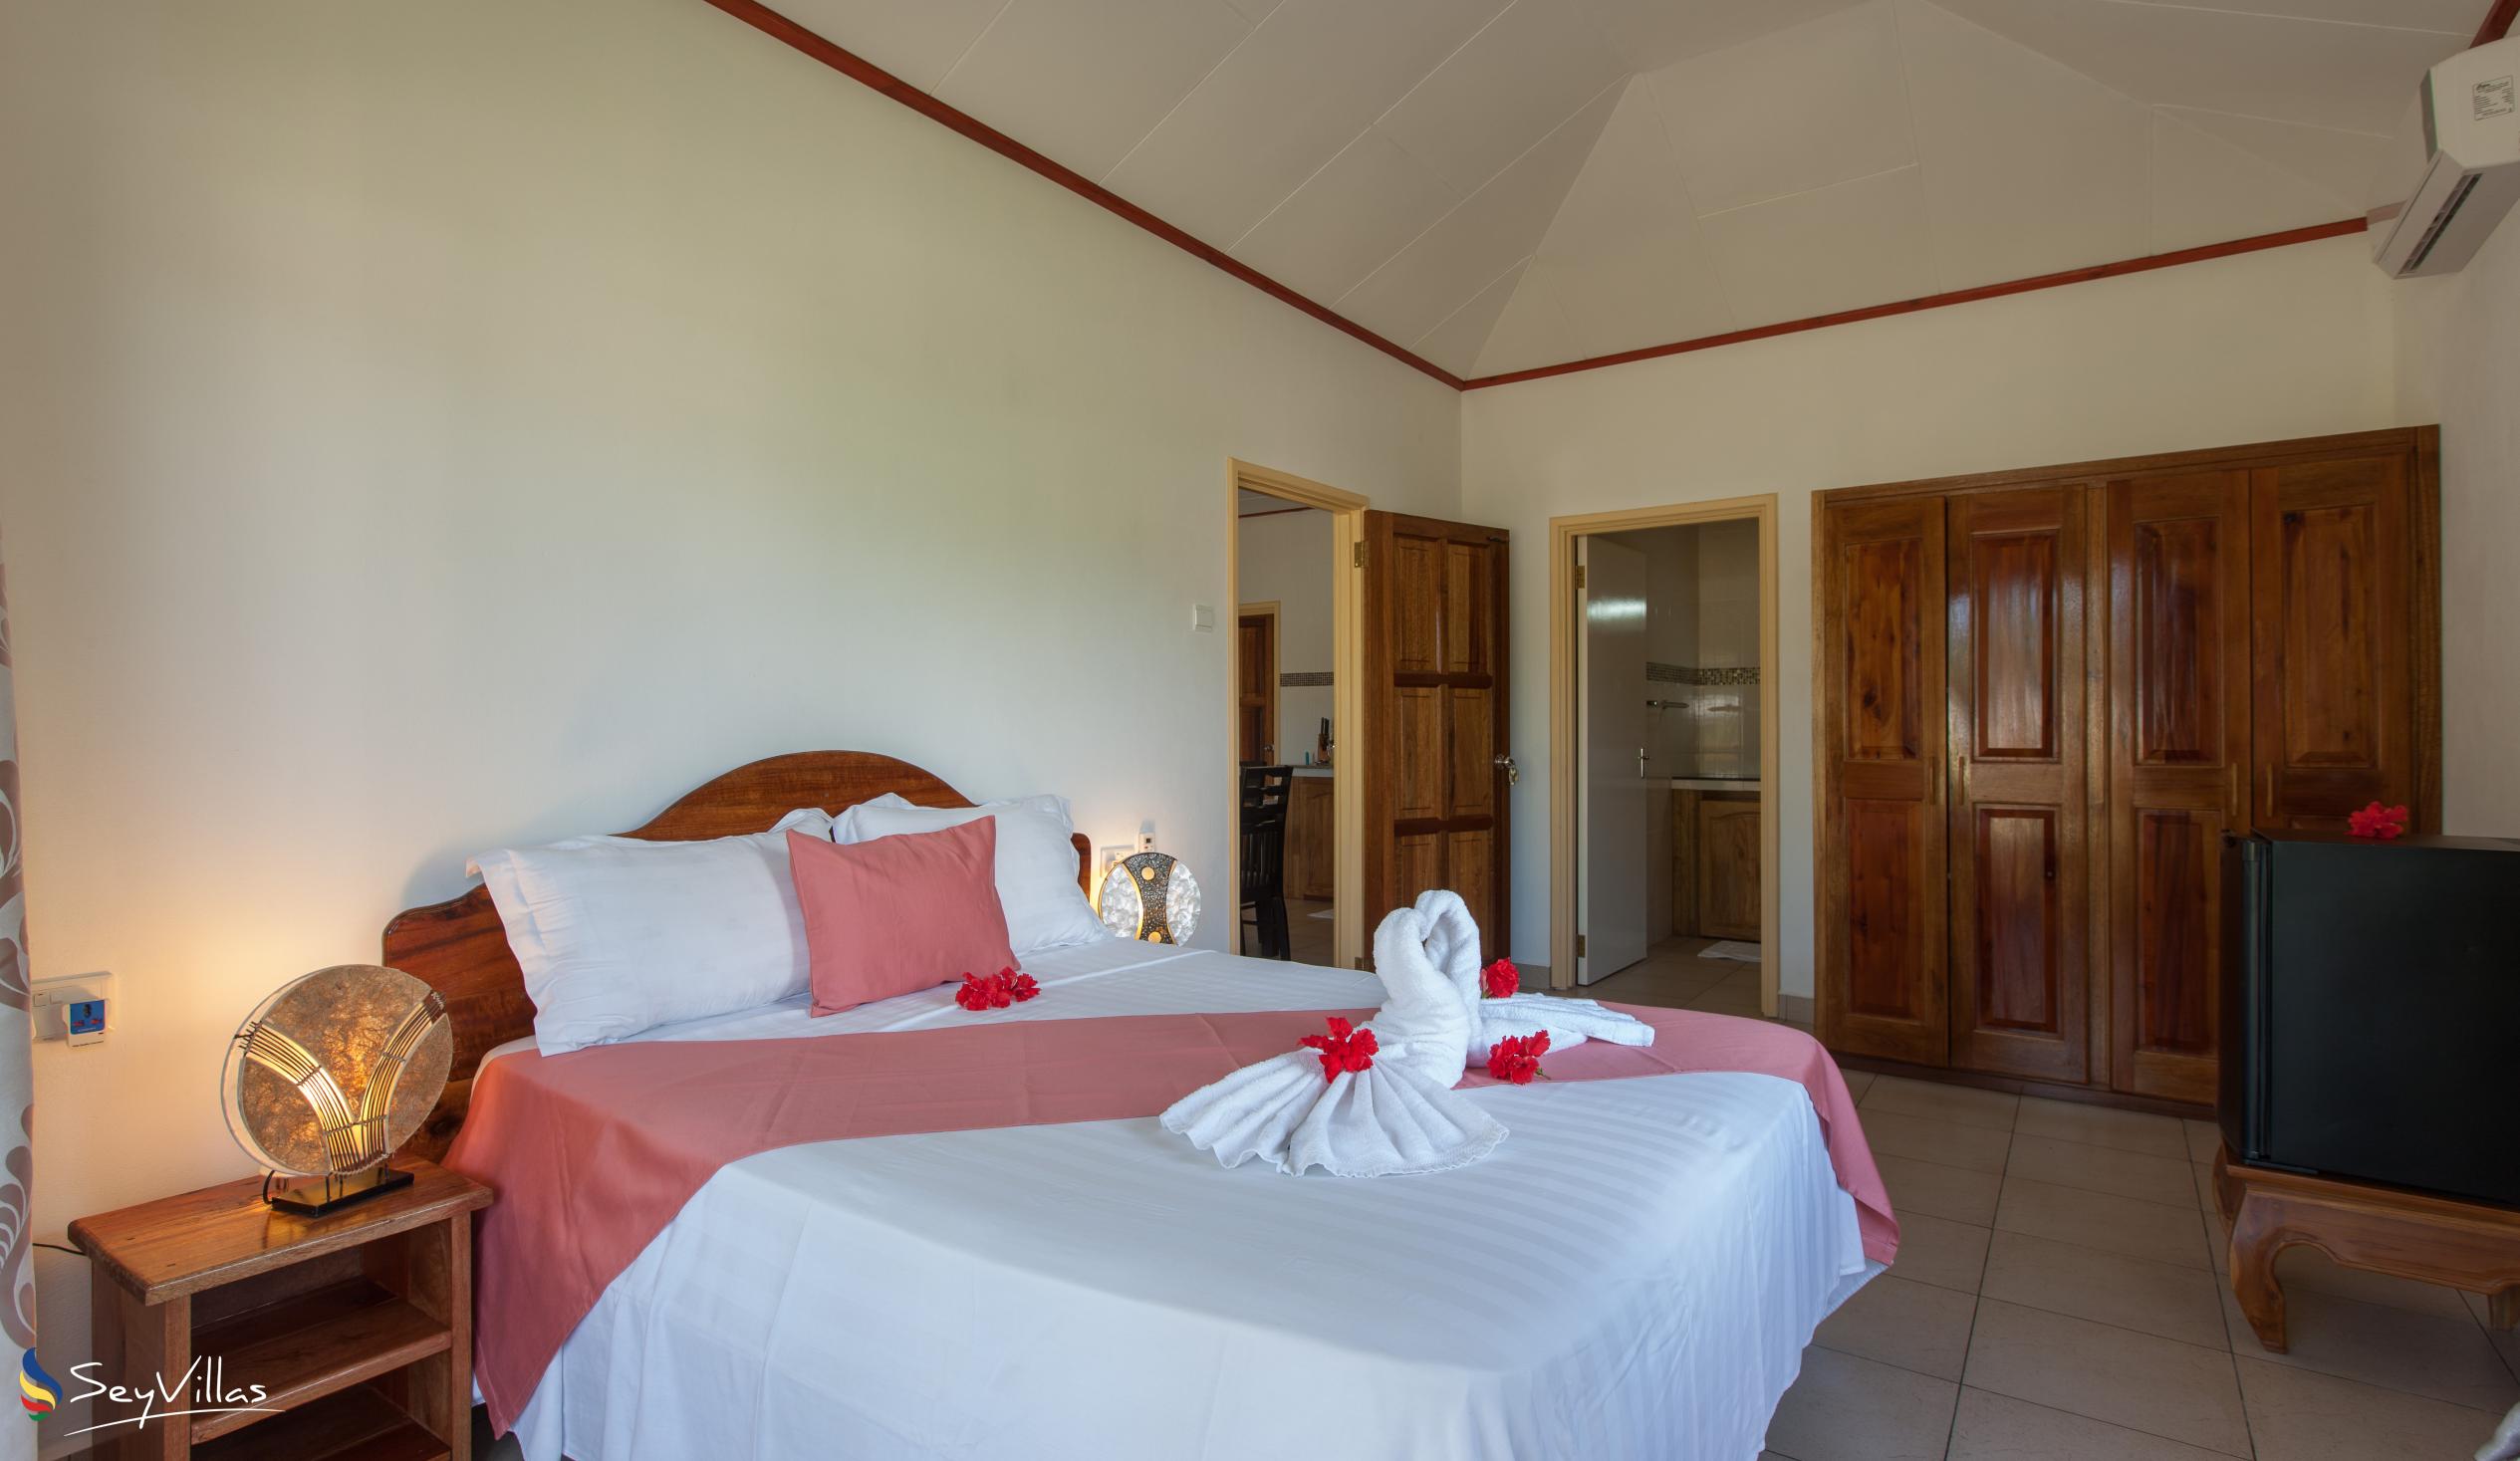 Photo 60: Hostellerie La Digue - 2-Bedroom Chalet - La Digue (Seychelles)